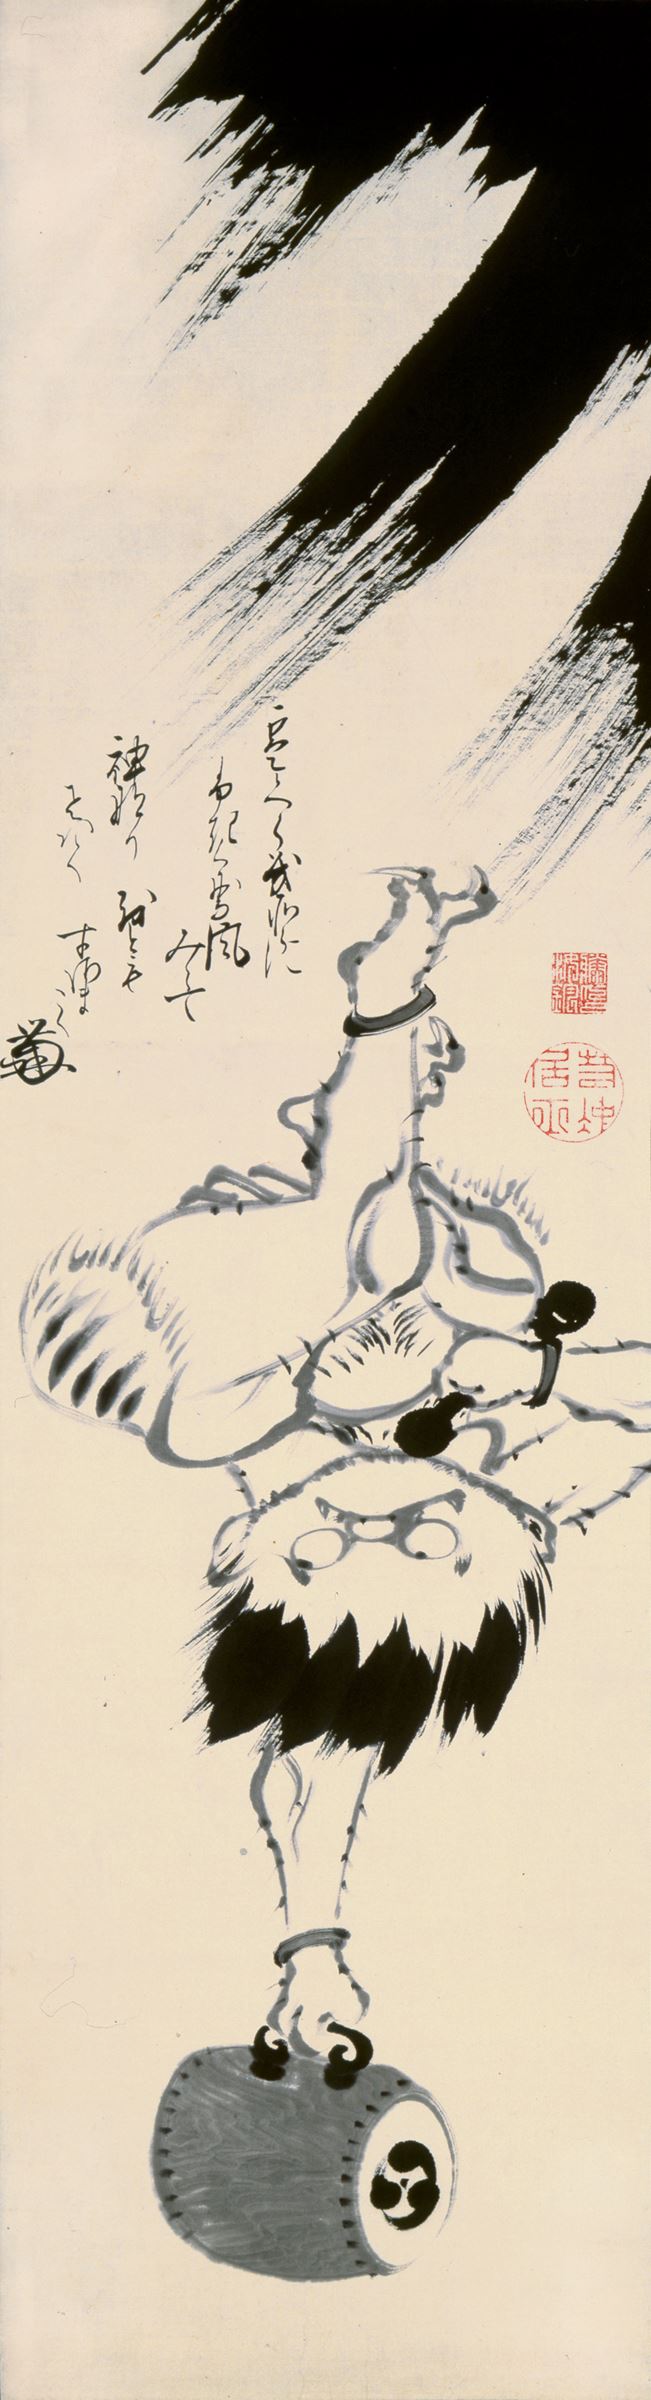 伊藤若冲《雷神図》宝暦-明和期(1751-72)頃　千葉市美術館蔵